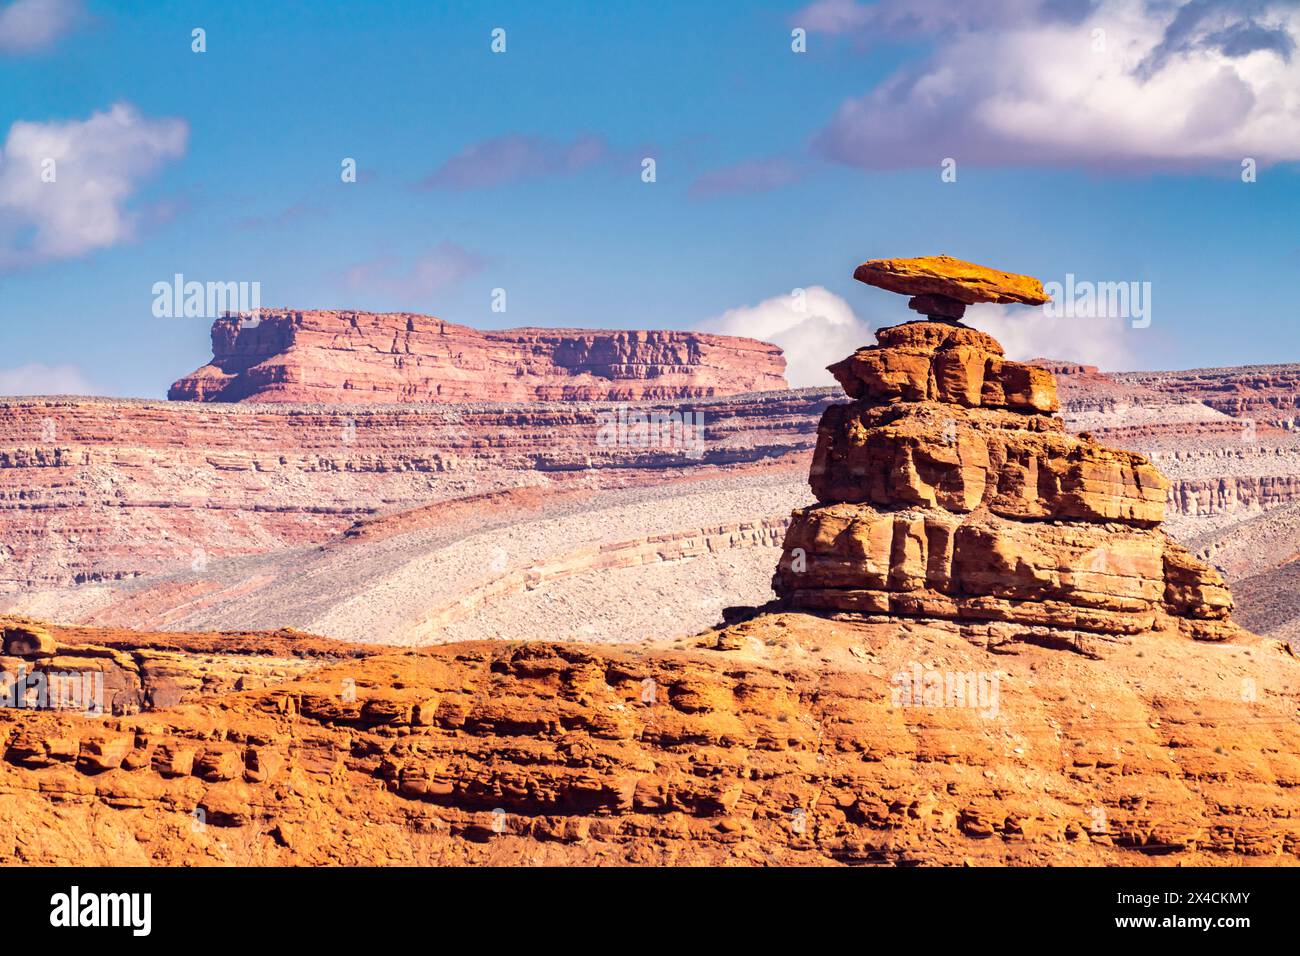 USA, Utah, Bear's Ears National Monument. Il cappello messicano ha eroso la formazione rocciosa. Foto Stock